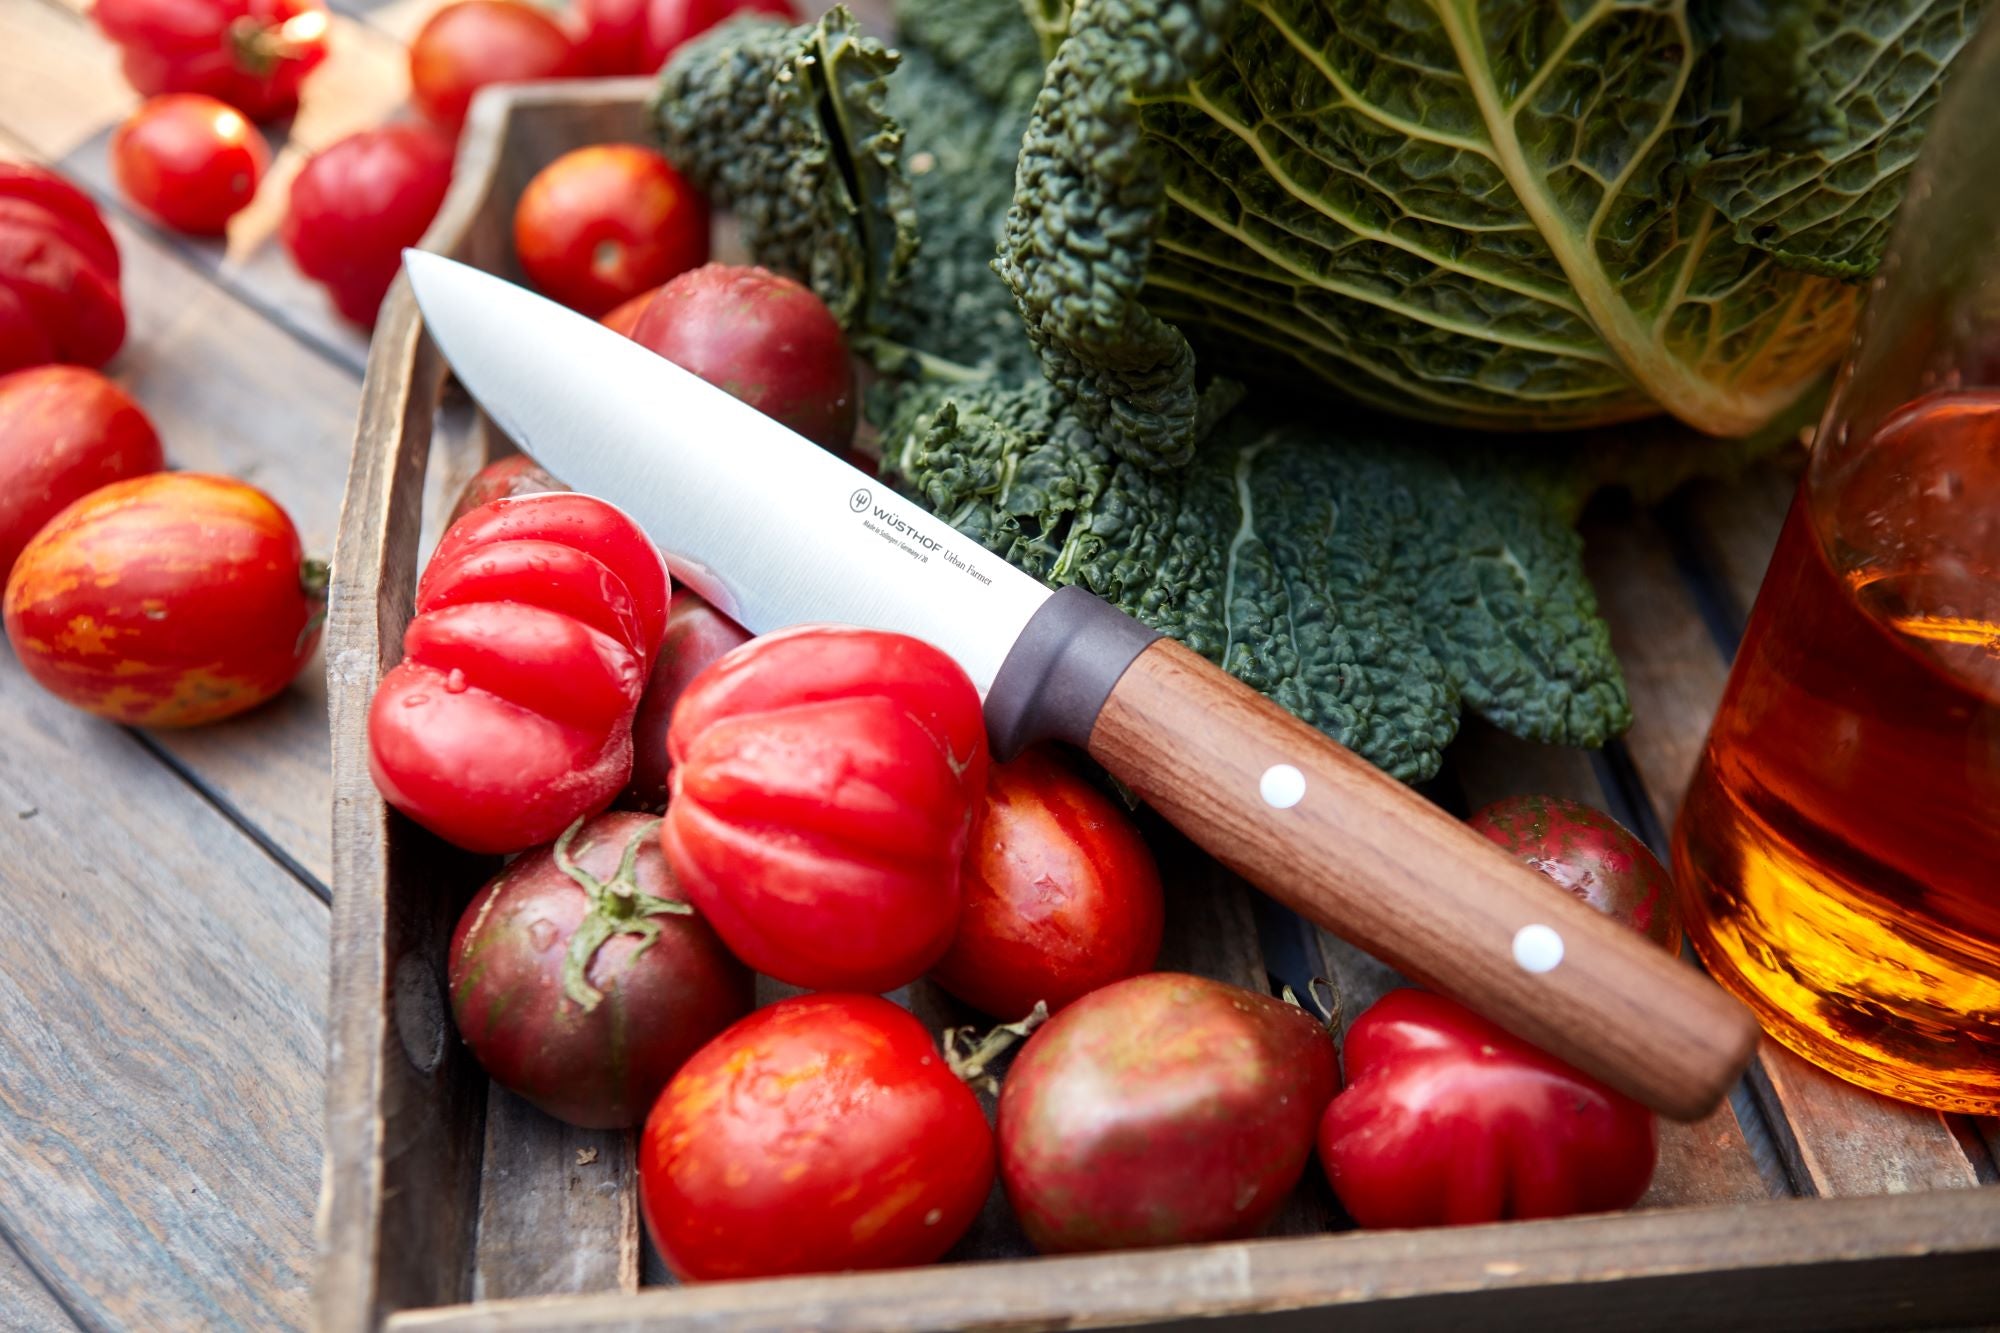 Santoku Knife with fruit and veg